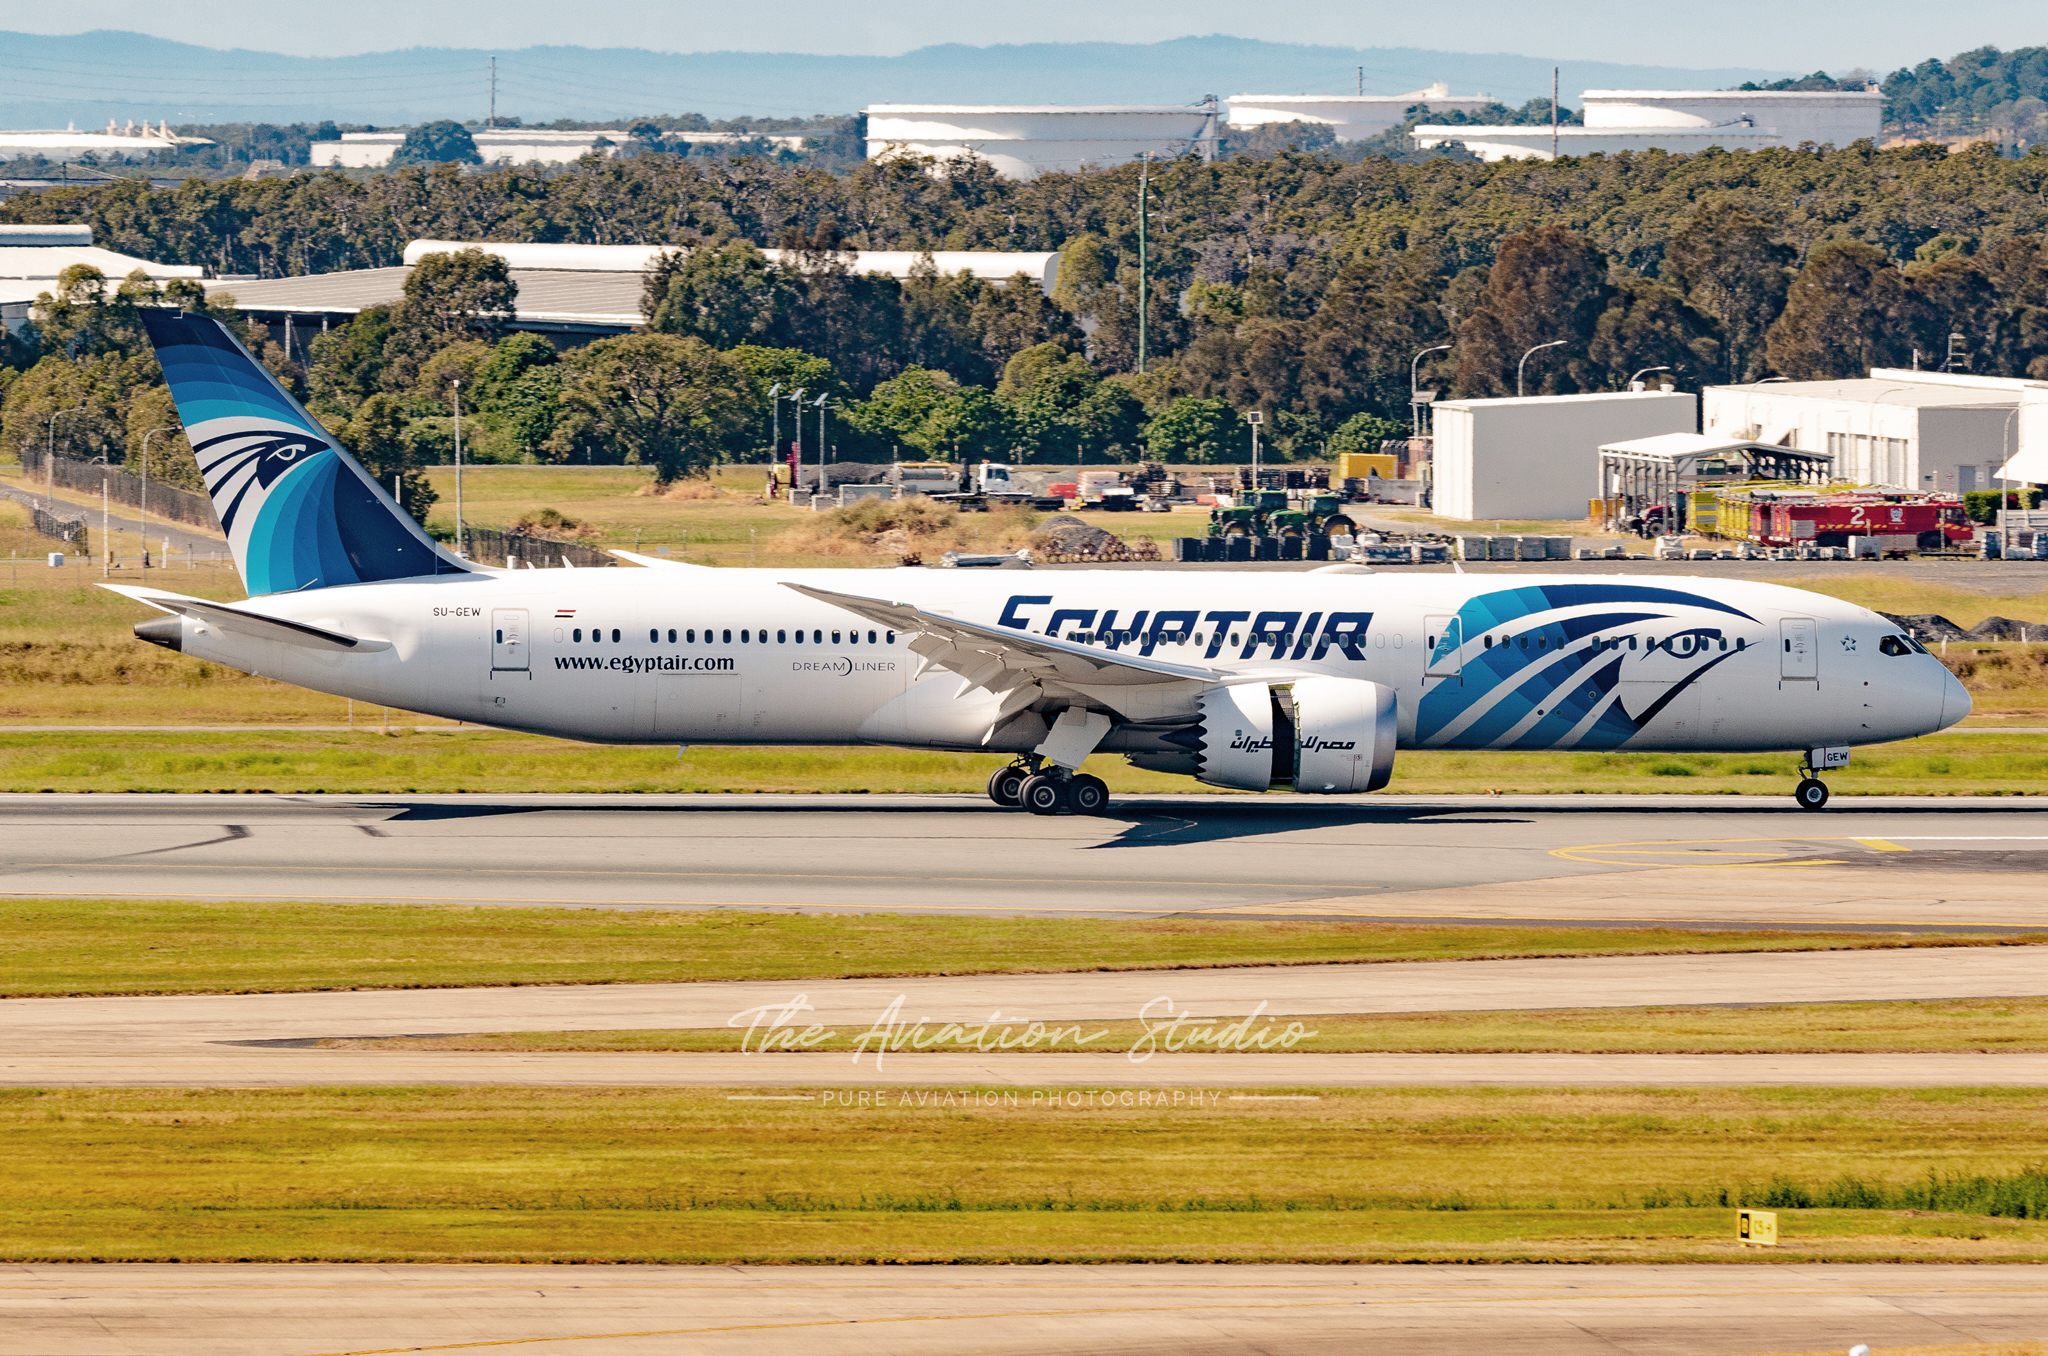 EgyptAir Boeing 787-9 Dreamliner SU-GEW arrives in Brisbane (Image: James Saunders)